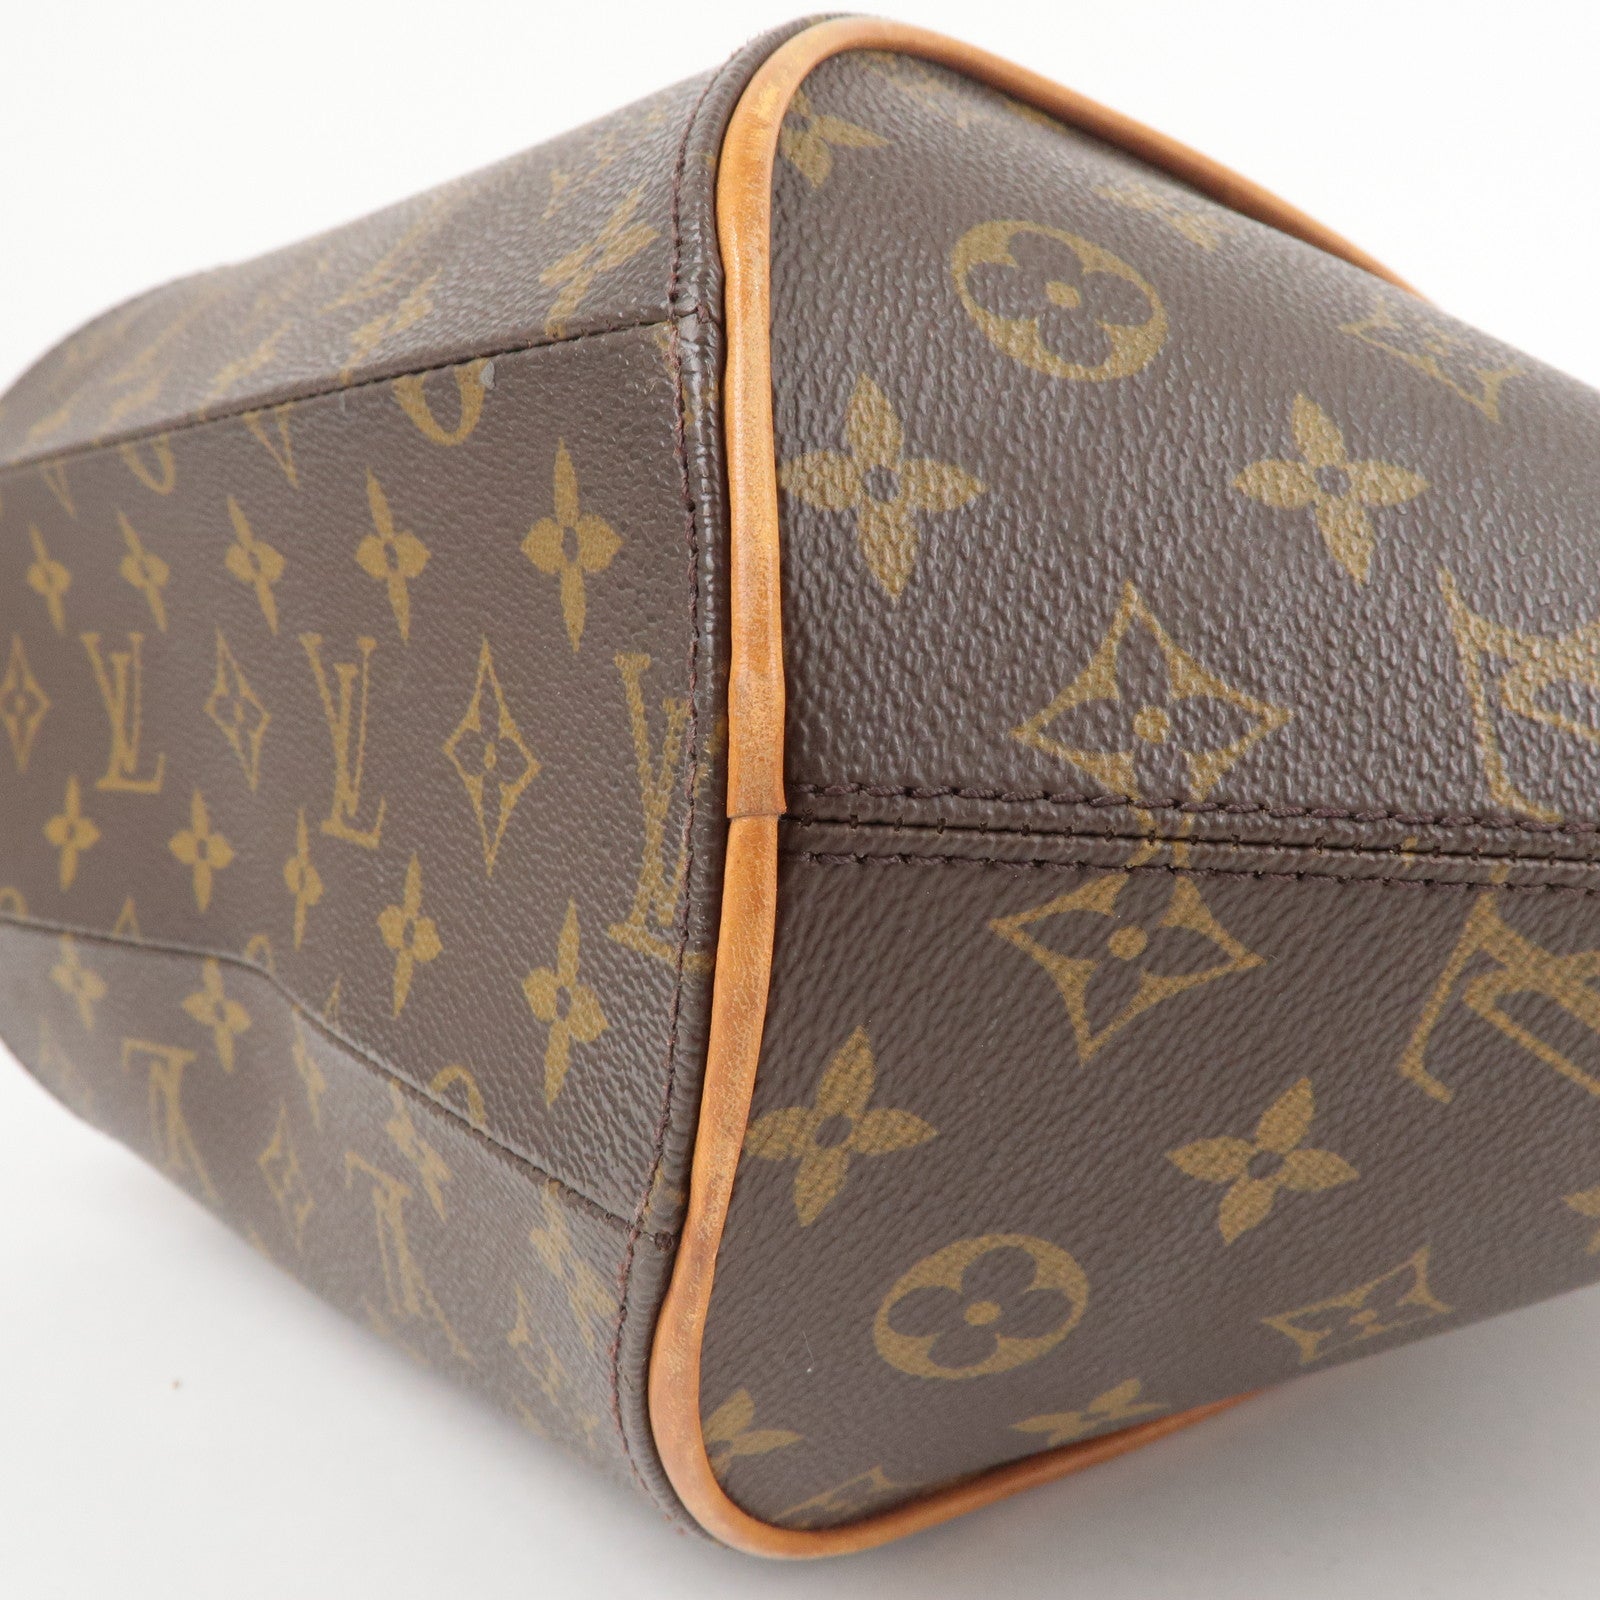 Louis Vuitton, Bags, Authentic Louis Vuitton Monogram Ellipse Mm Hand Bag